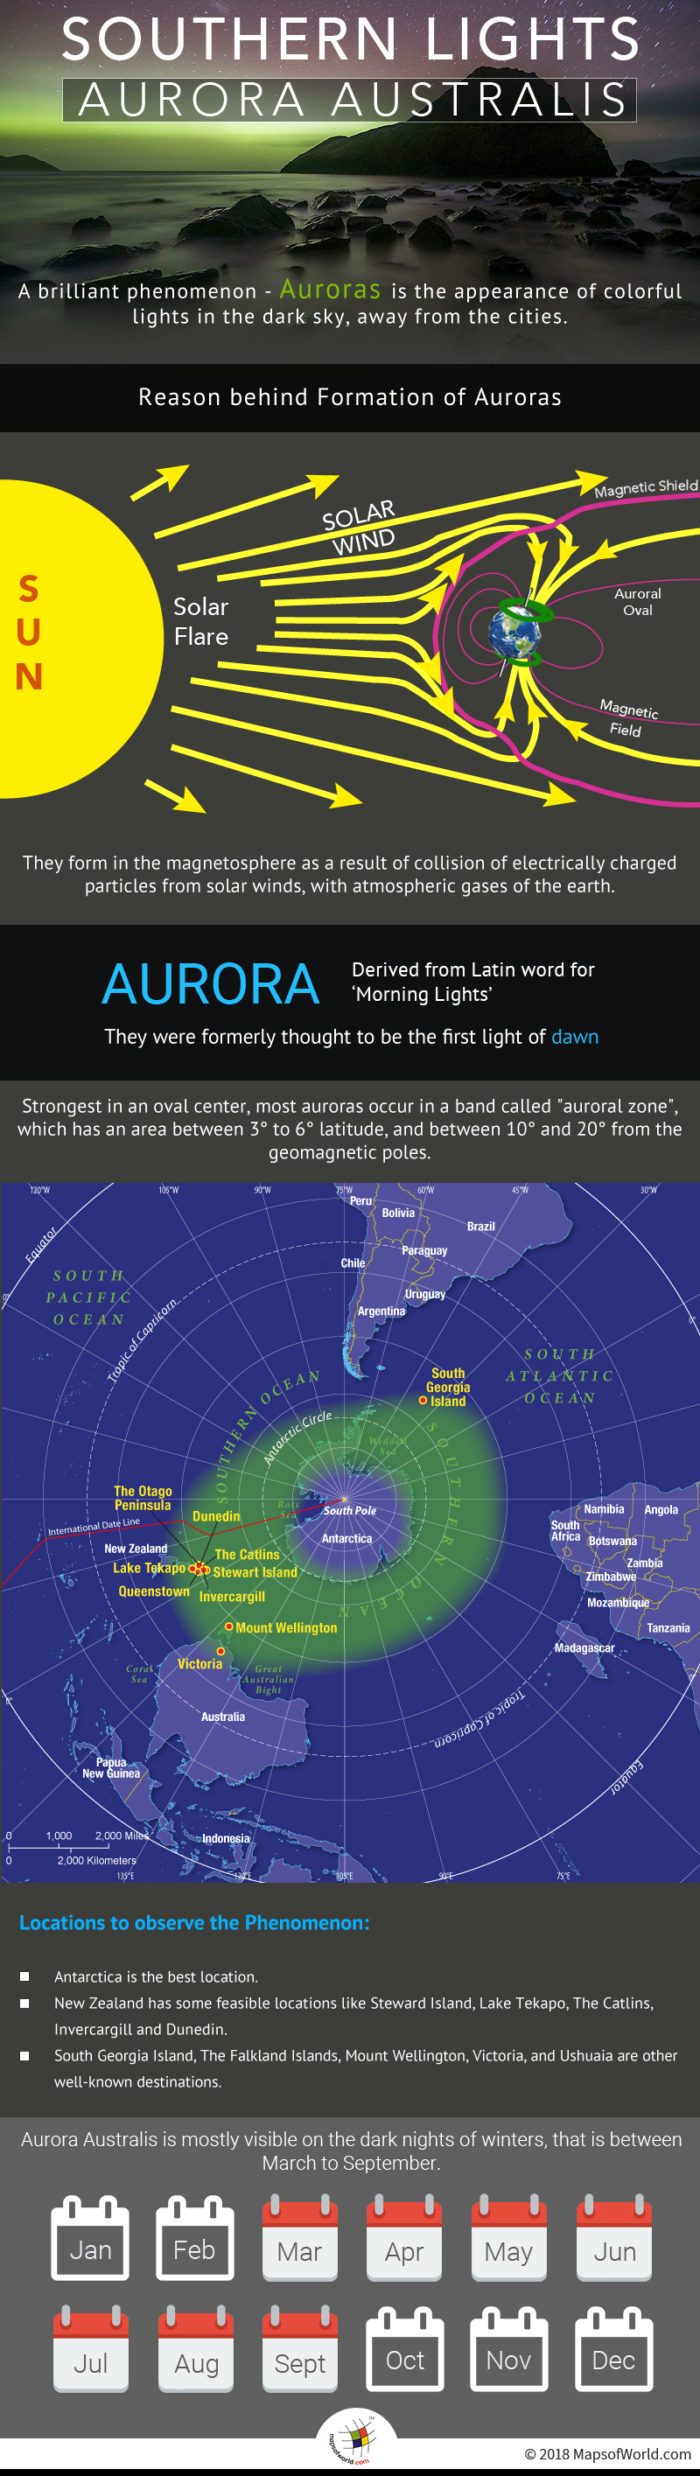 Infographic elaborating Aurora Australis